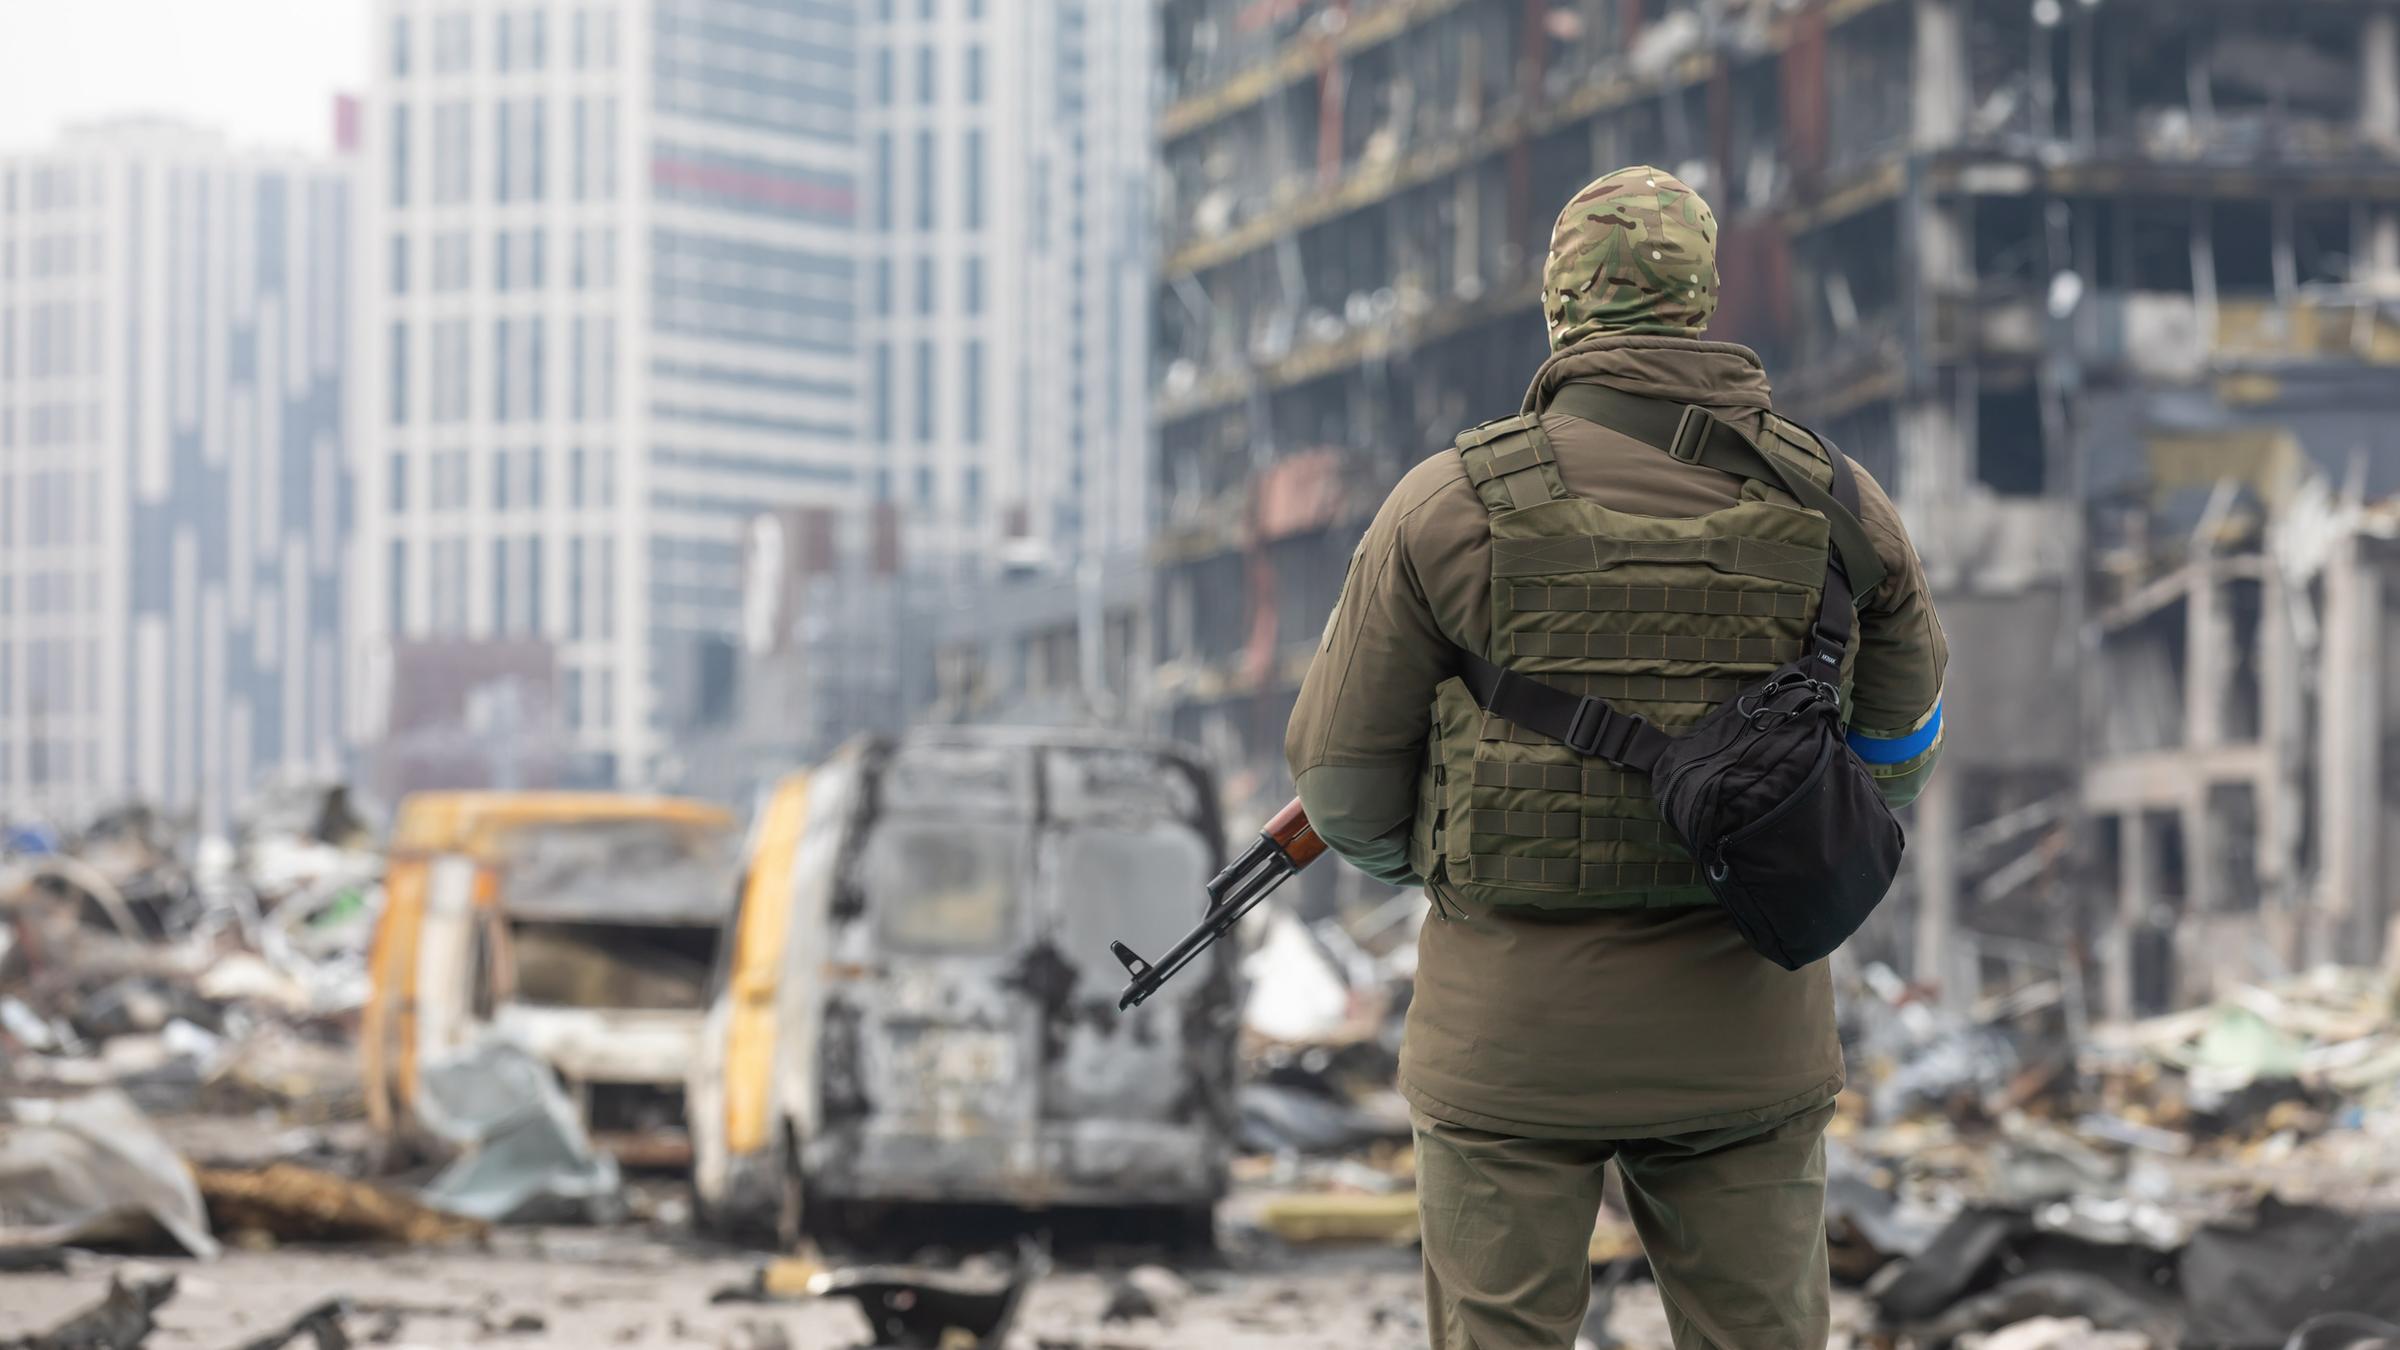 Ein ukrainischer Soldat steht mit einem Waffe in der Hand vor einem
zerstörten Gebäude in Kiew. Er dreht dem Betrachter den Rücken
zu.